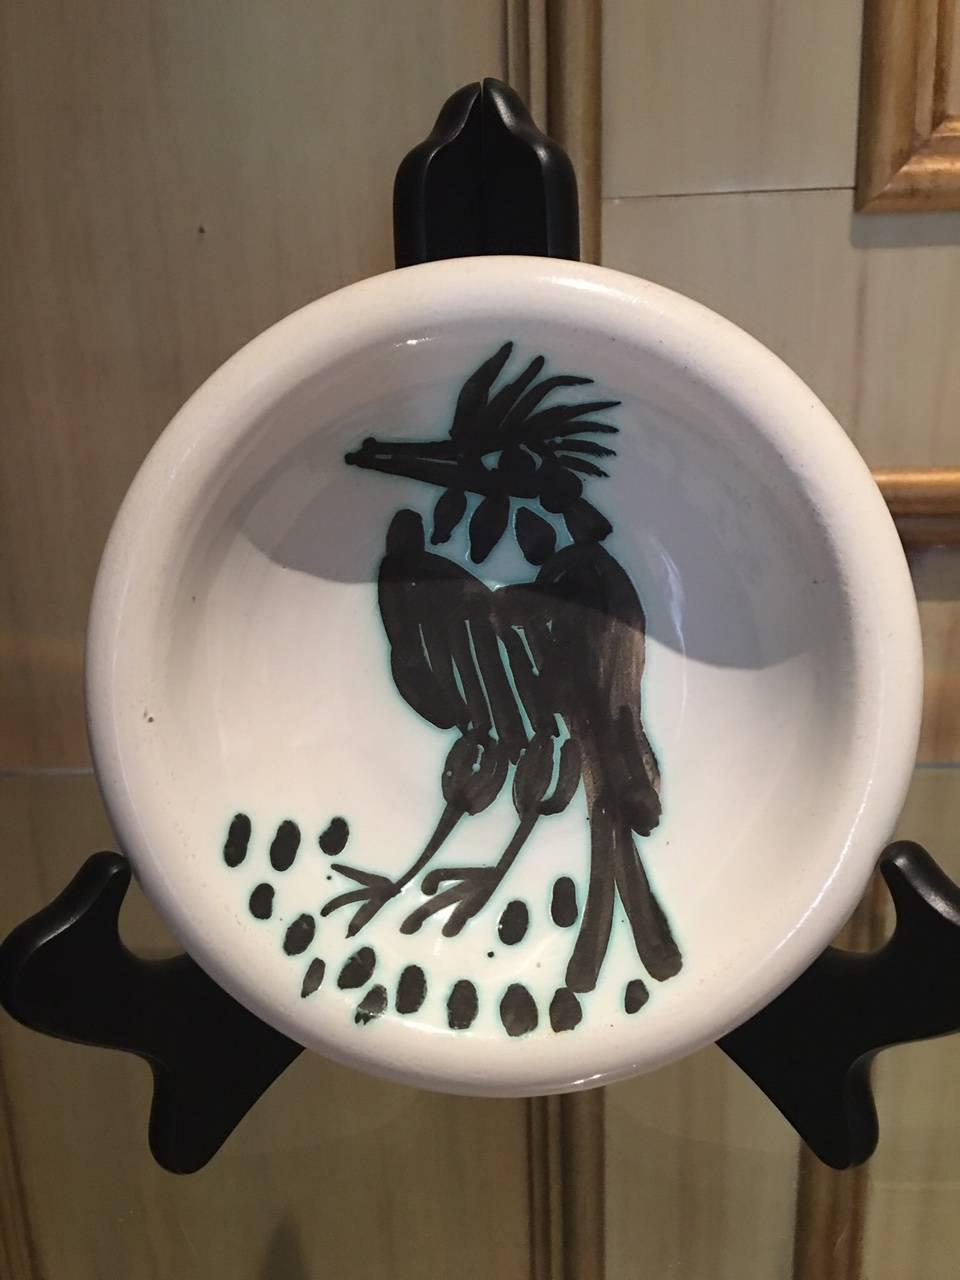 Ramie 173 Oiseau a la Hoppe Picasso Madoura Ceramic